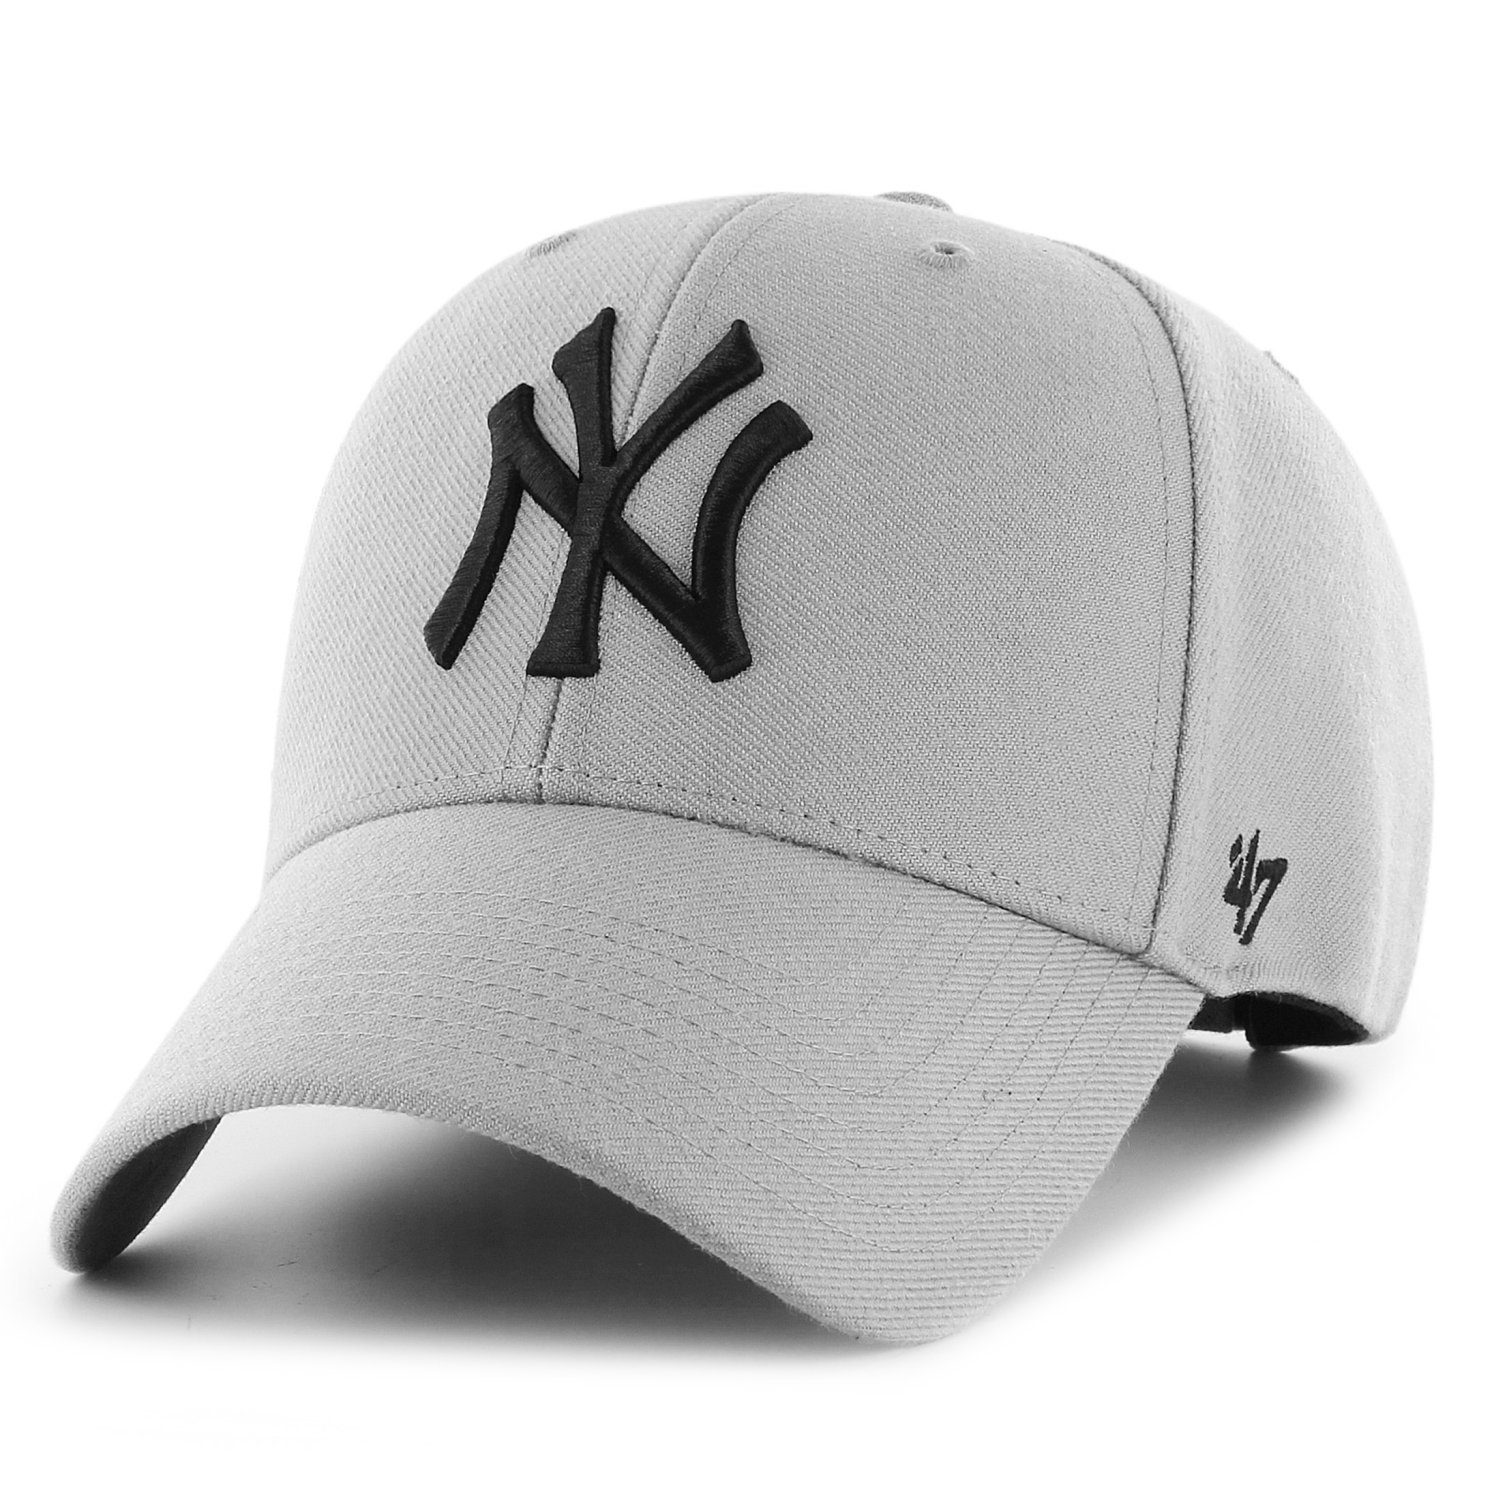 MOMENTUM Chicago White Sox schwarz 47 Brand Adjustable Cap 